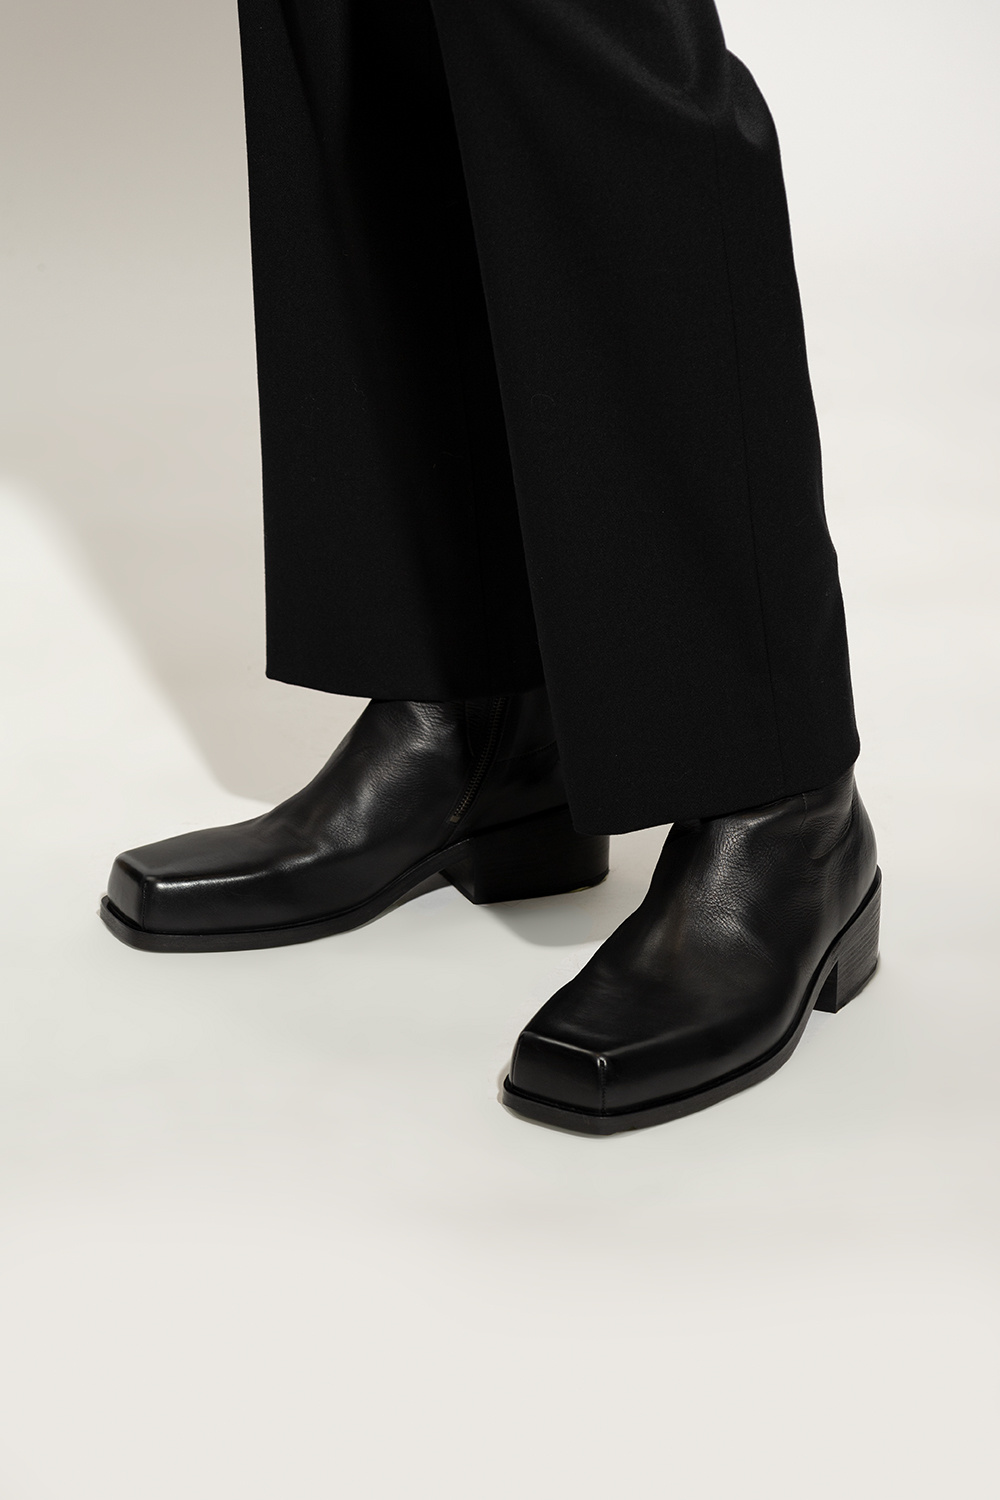 Marsell 'zapatillas de running amortiguación minimalista pie normal apoyo talón